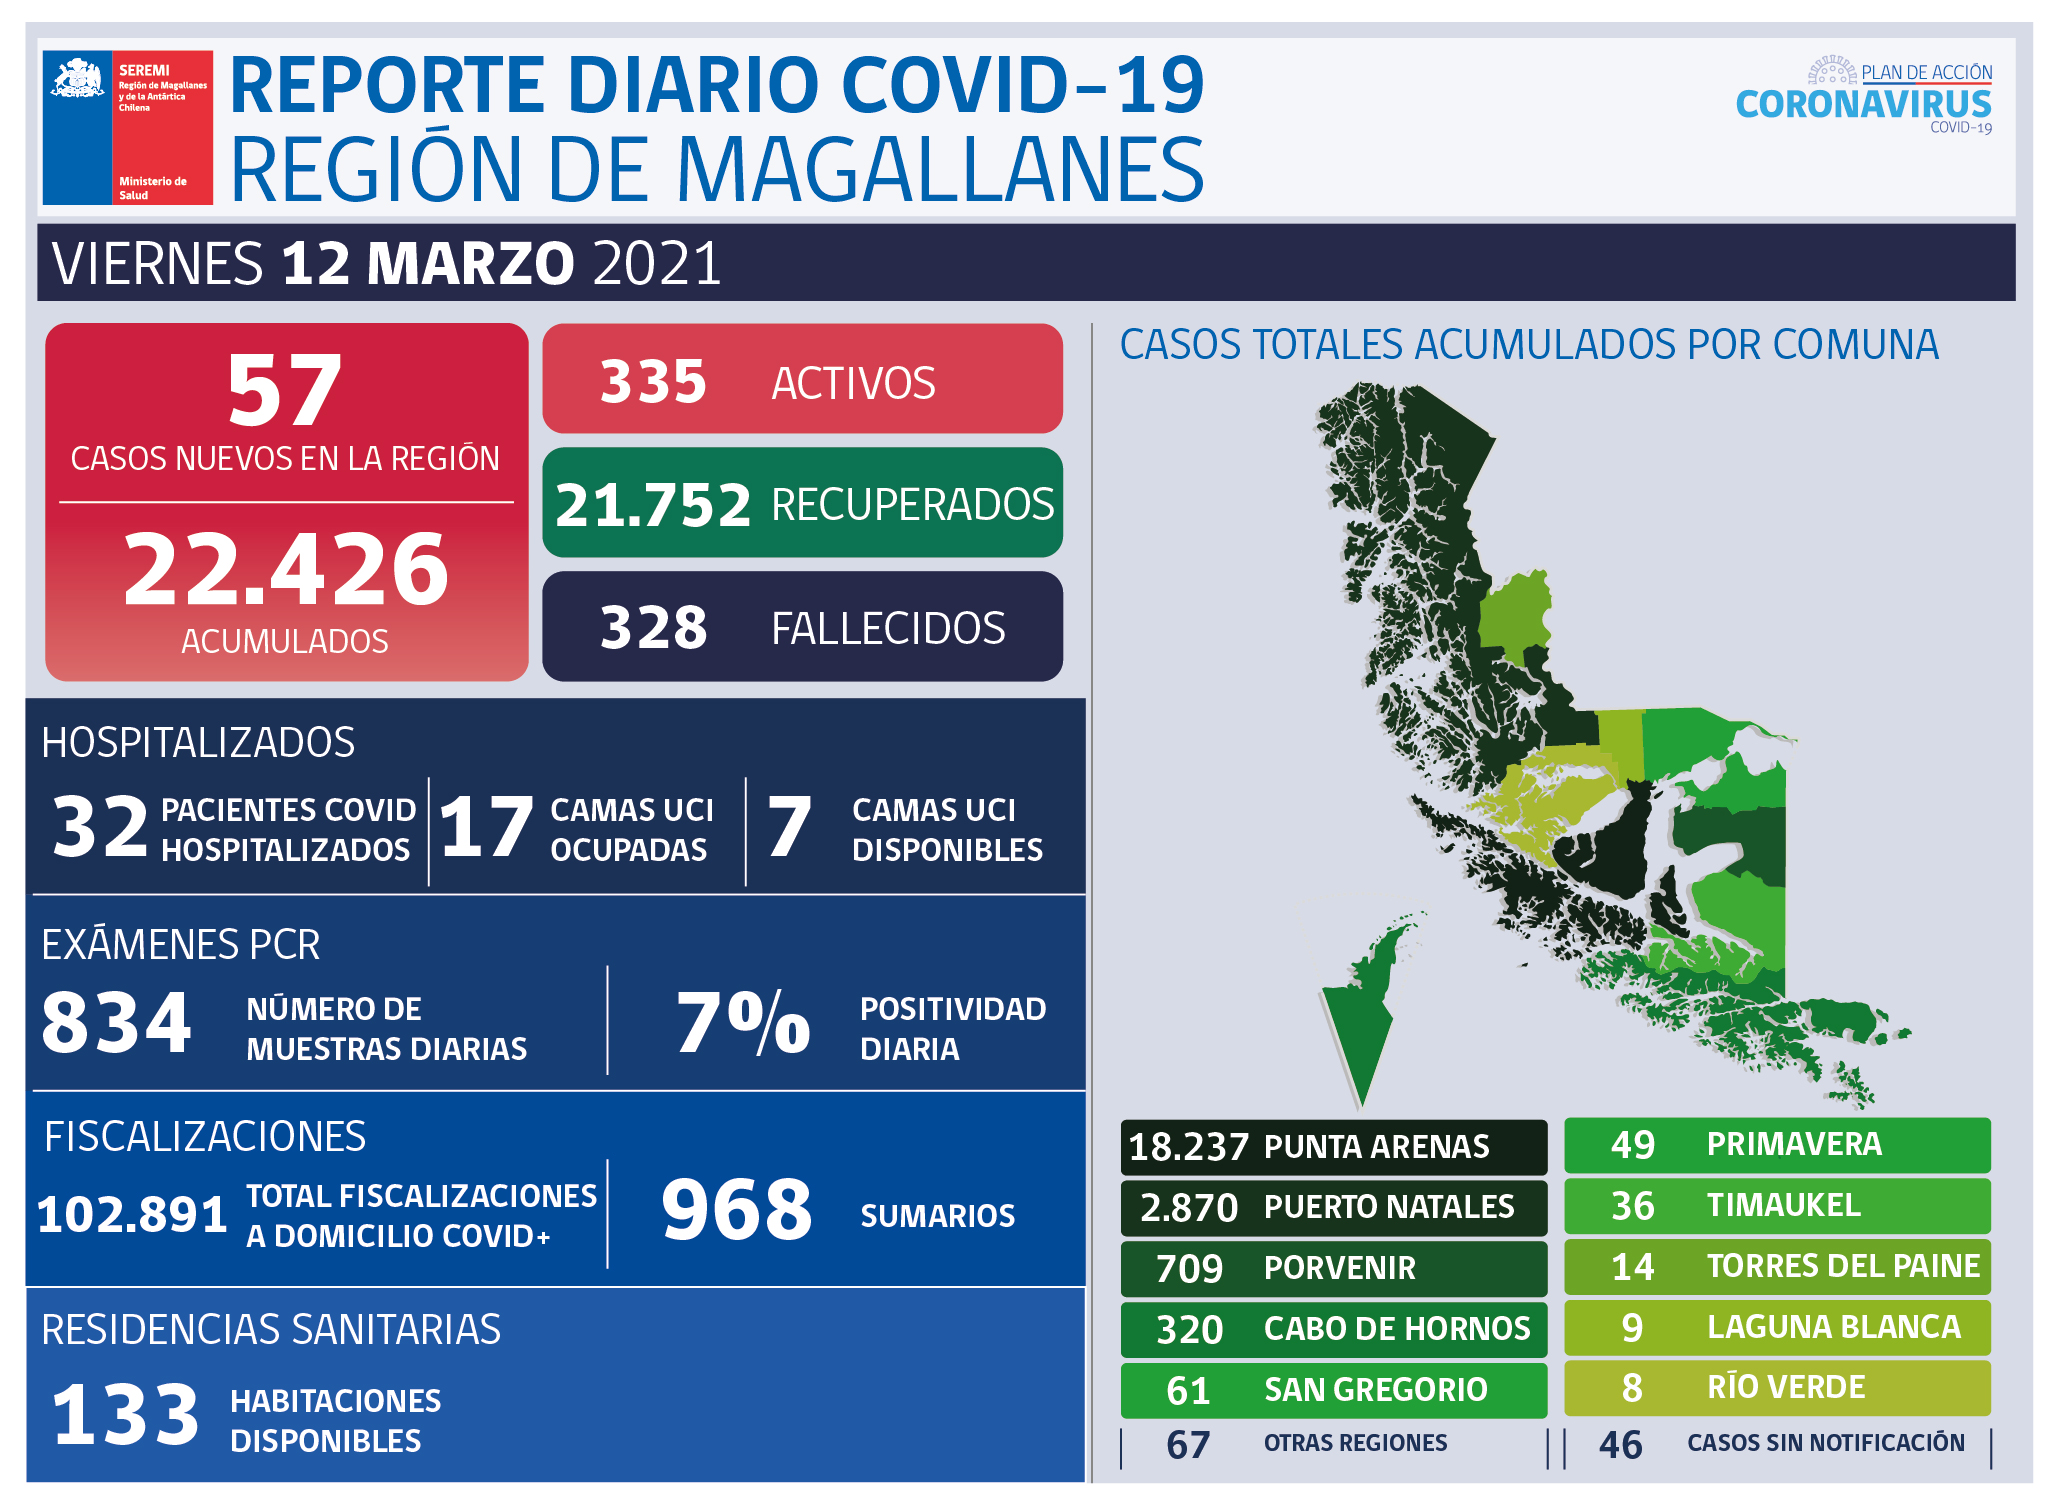 57 nuevos casos de covid-19 se registran hoy viernes 12 de marzo en Magallanes